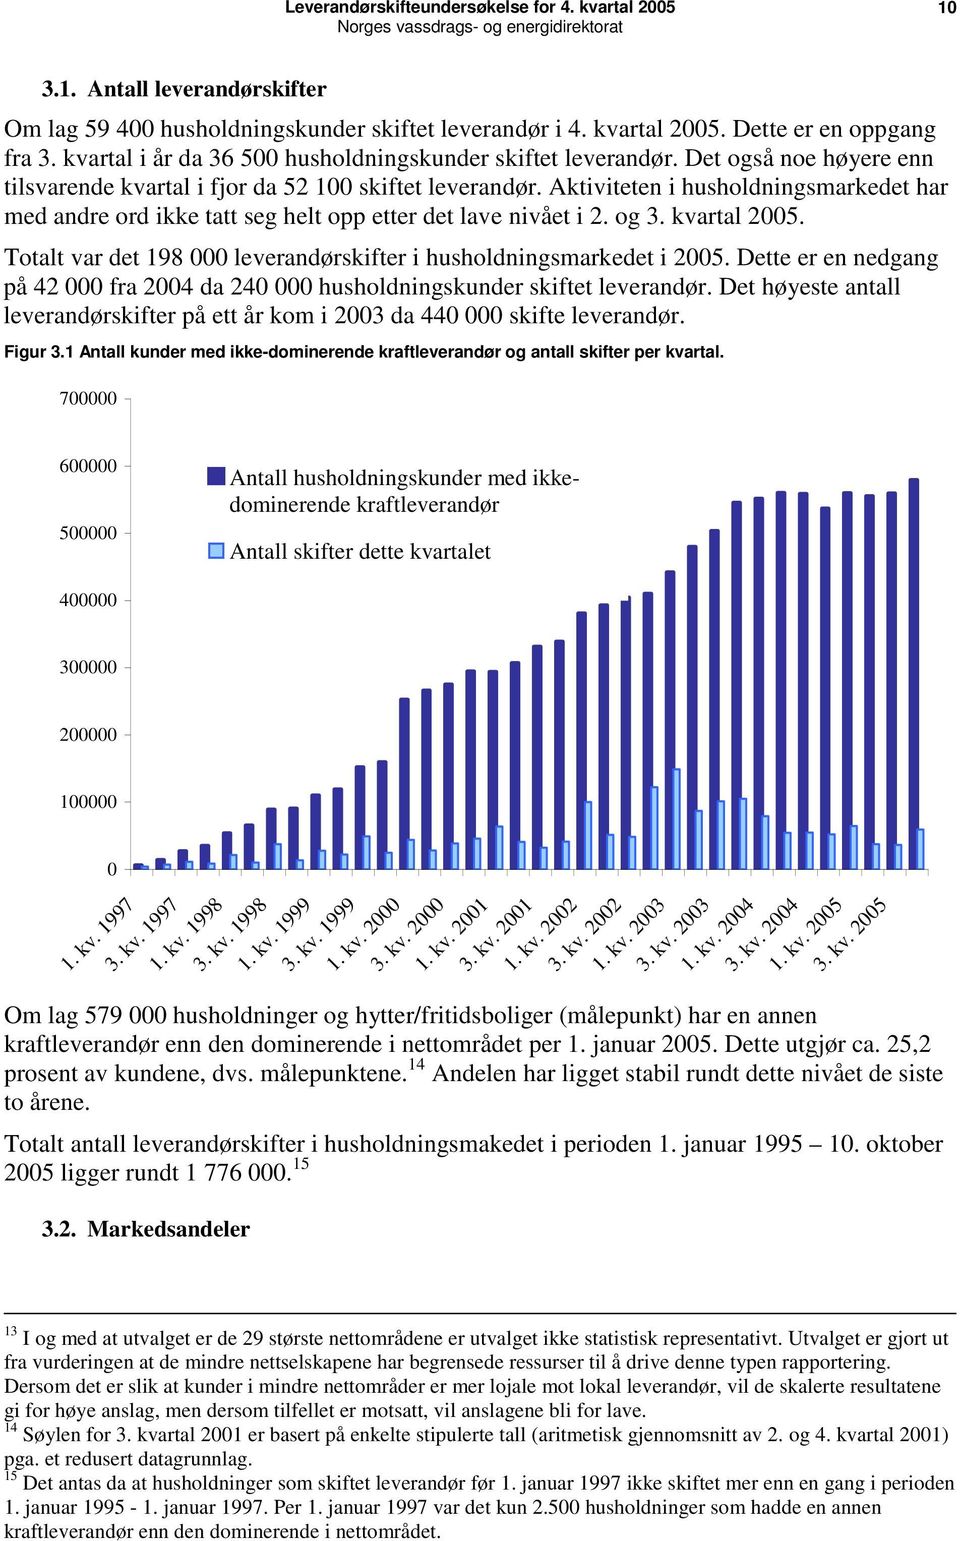 kvartal 2005. Totalt var det 198 000 leverandørskifter i husholdningsmarkedet i 2005. Dette er en nedgang på 42 000 fra 2004 da 240 000 husholdningskunder skiftet leverandør.